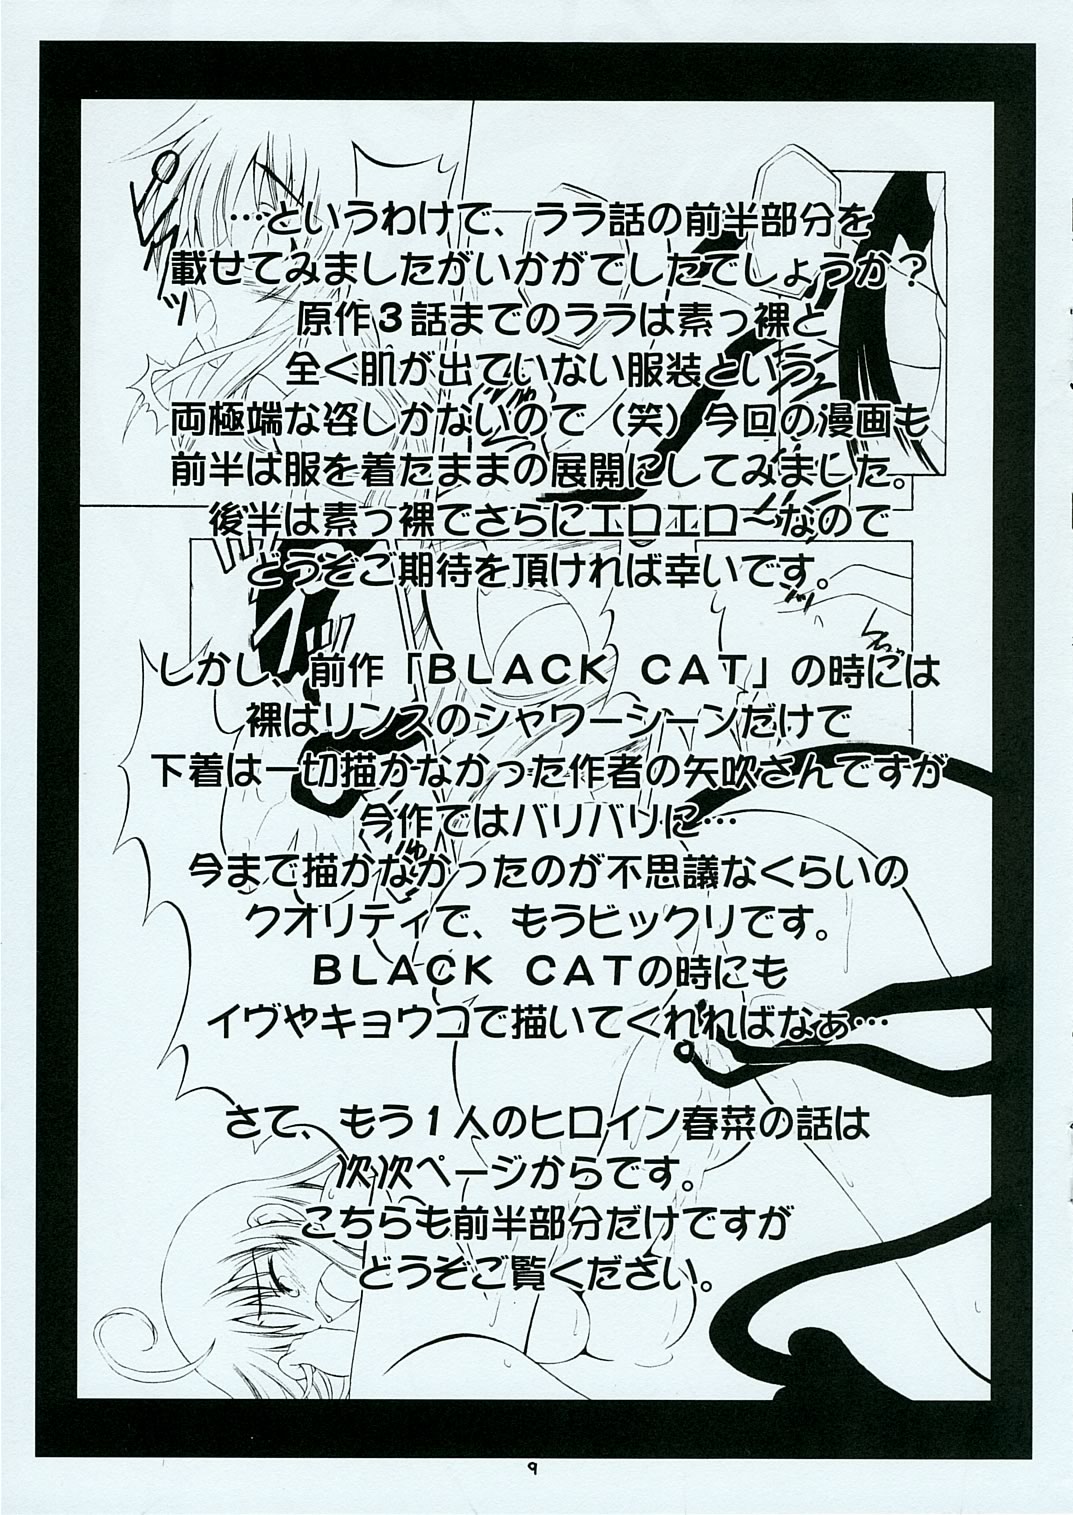 (SC31) [RED RIBBON REVENGER (Makoushi)] Troublemaker Junbigou  (To LOVE-Ru) (サンクリ31) [RED RIBBON REVENGER (魔公子)] とらぶるめーかー準備号 (ToLOVEる-とらぶる-)